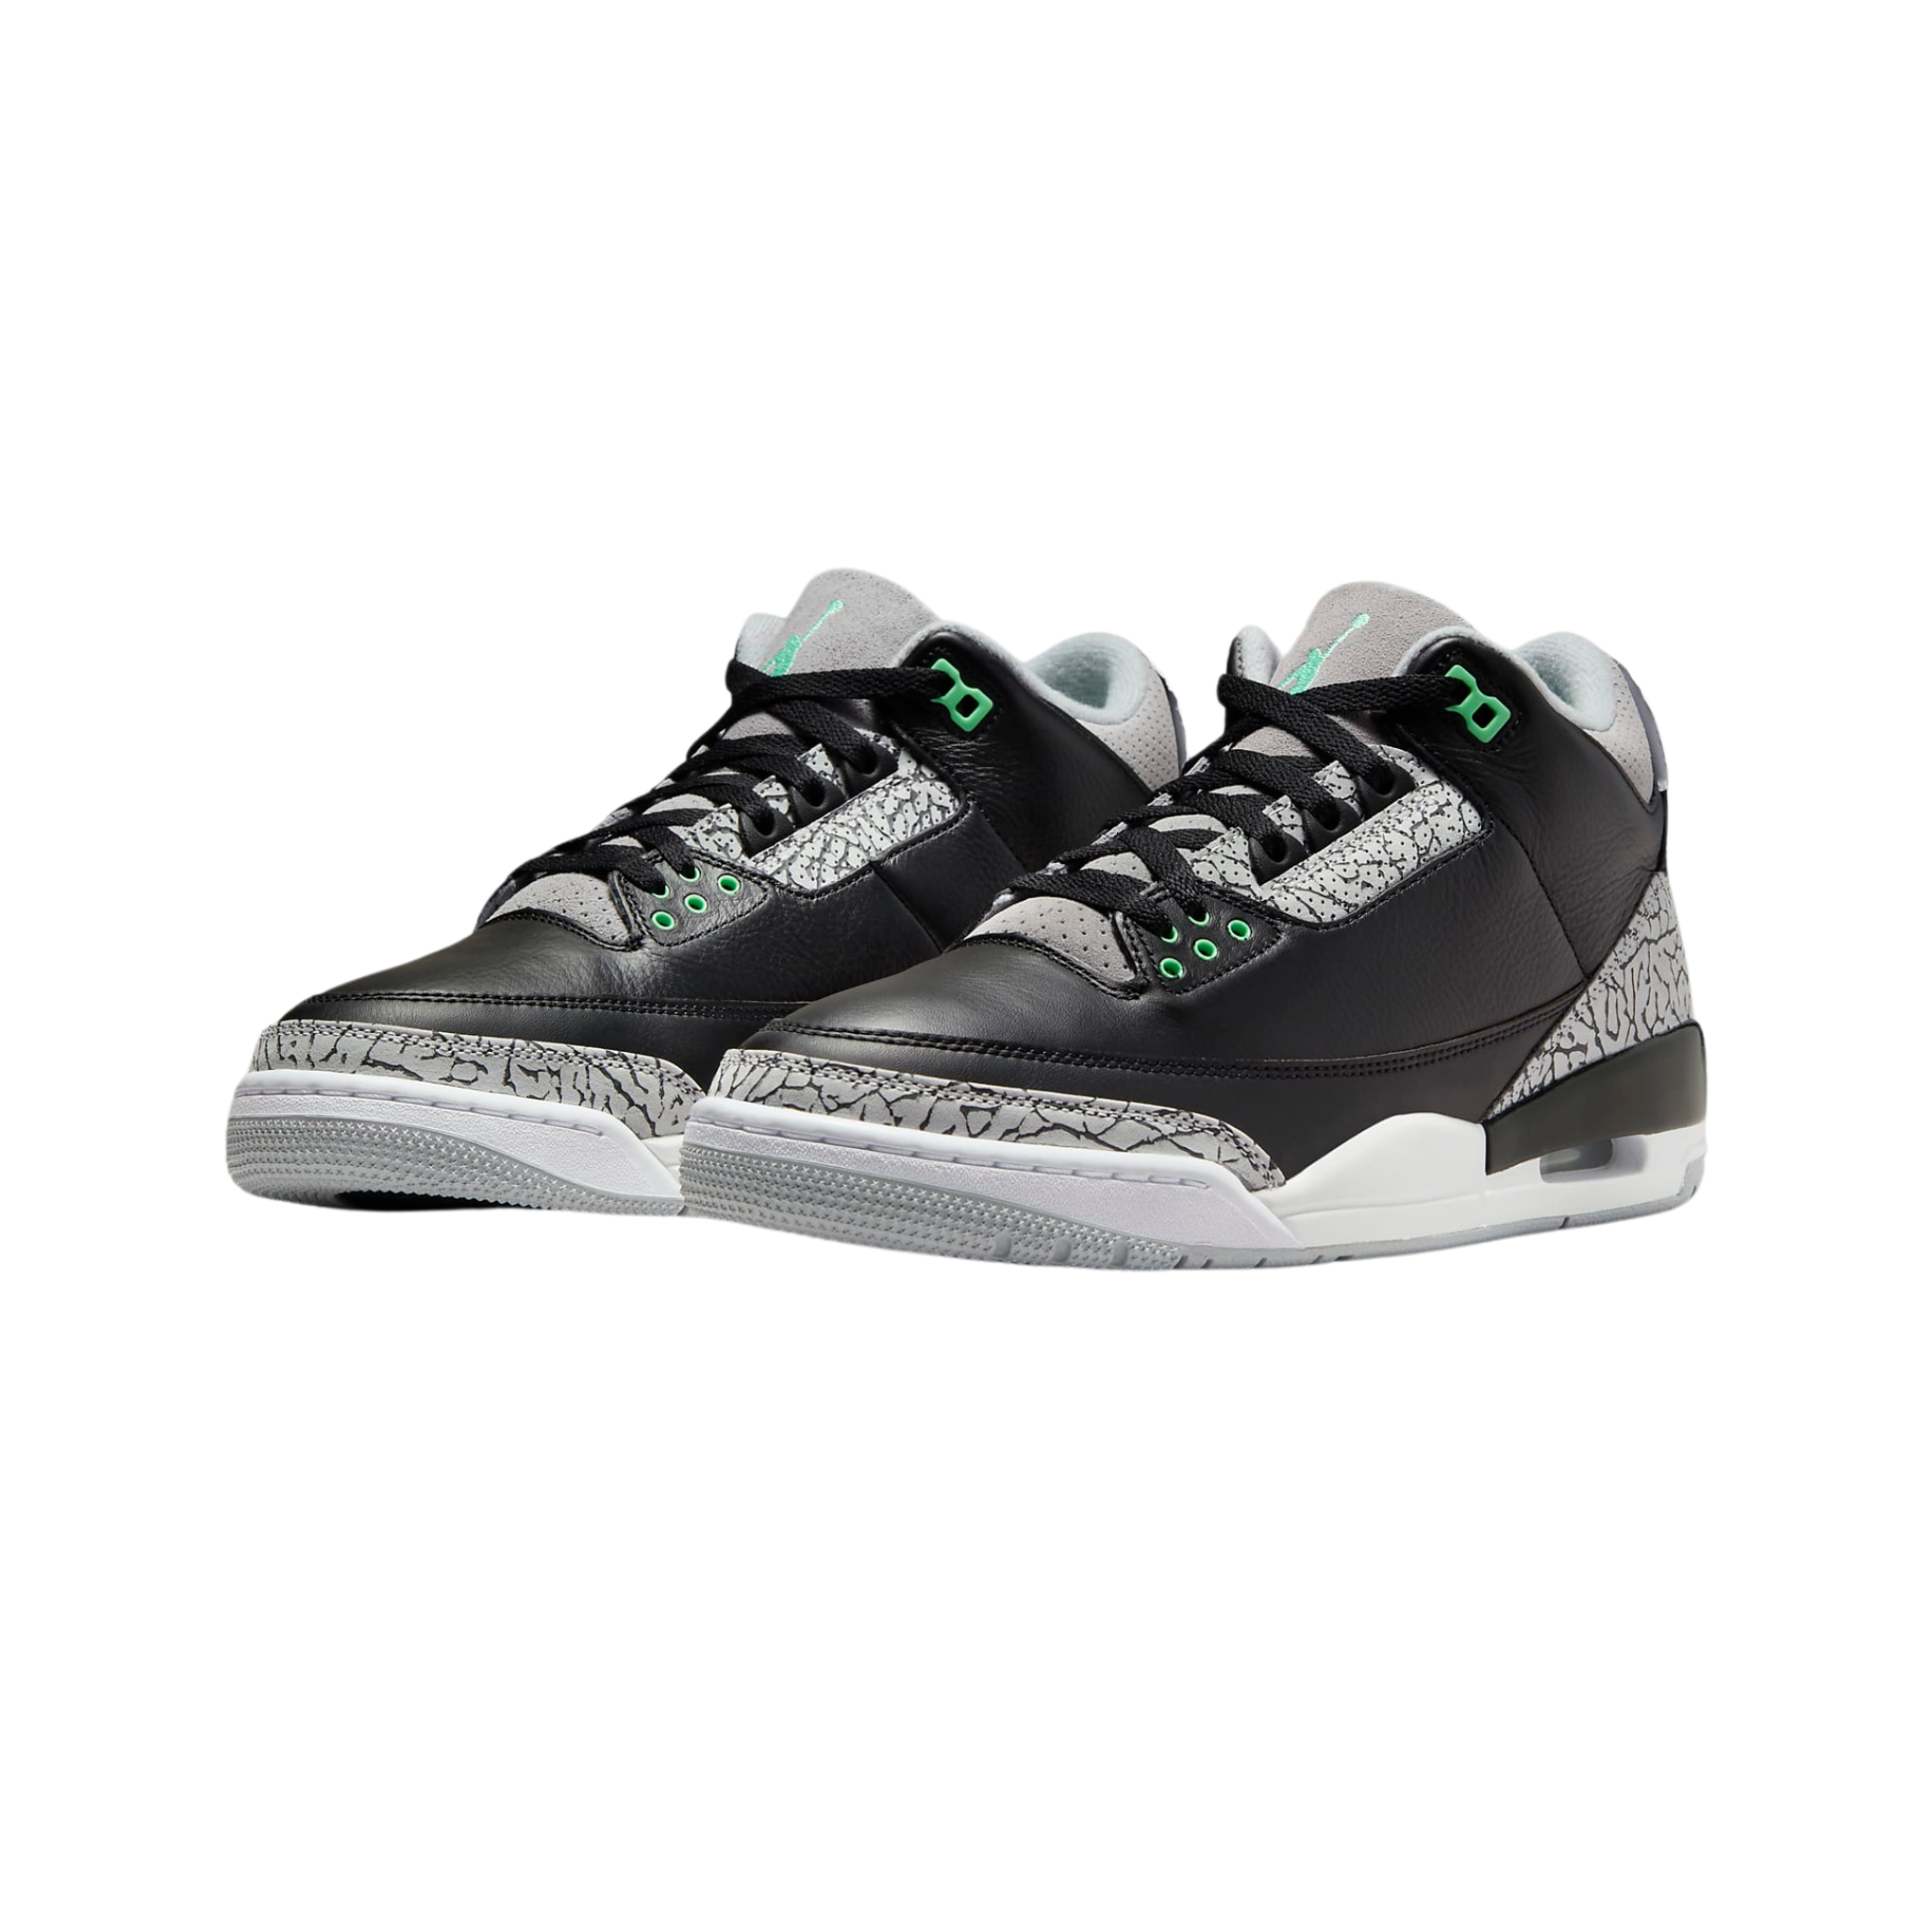 Nike Men's Air Jordan 3 Retro Green Glow Shoes